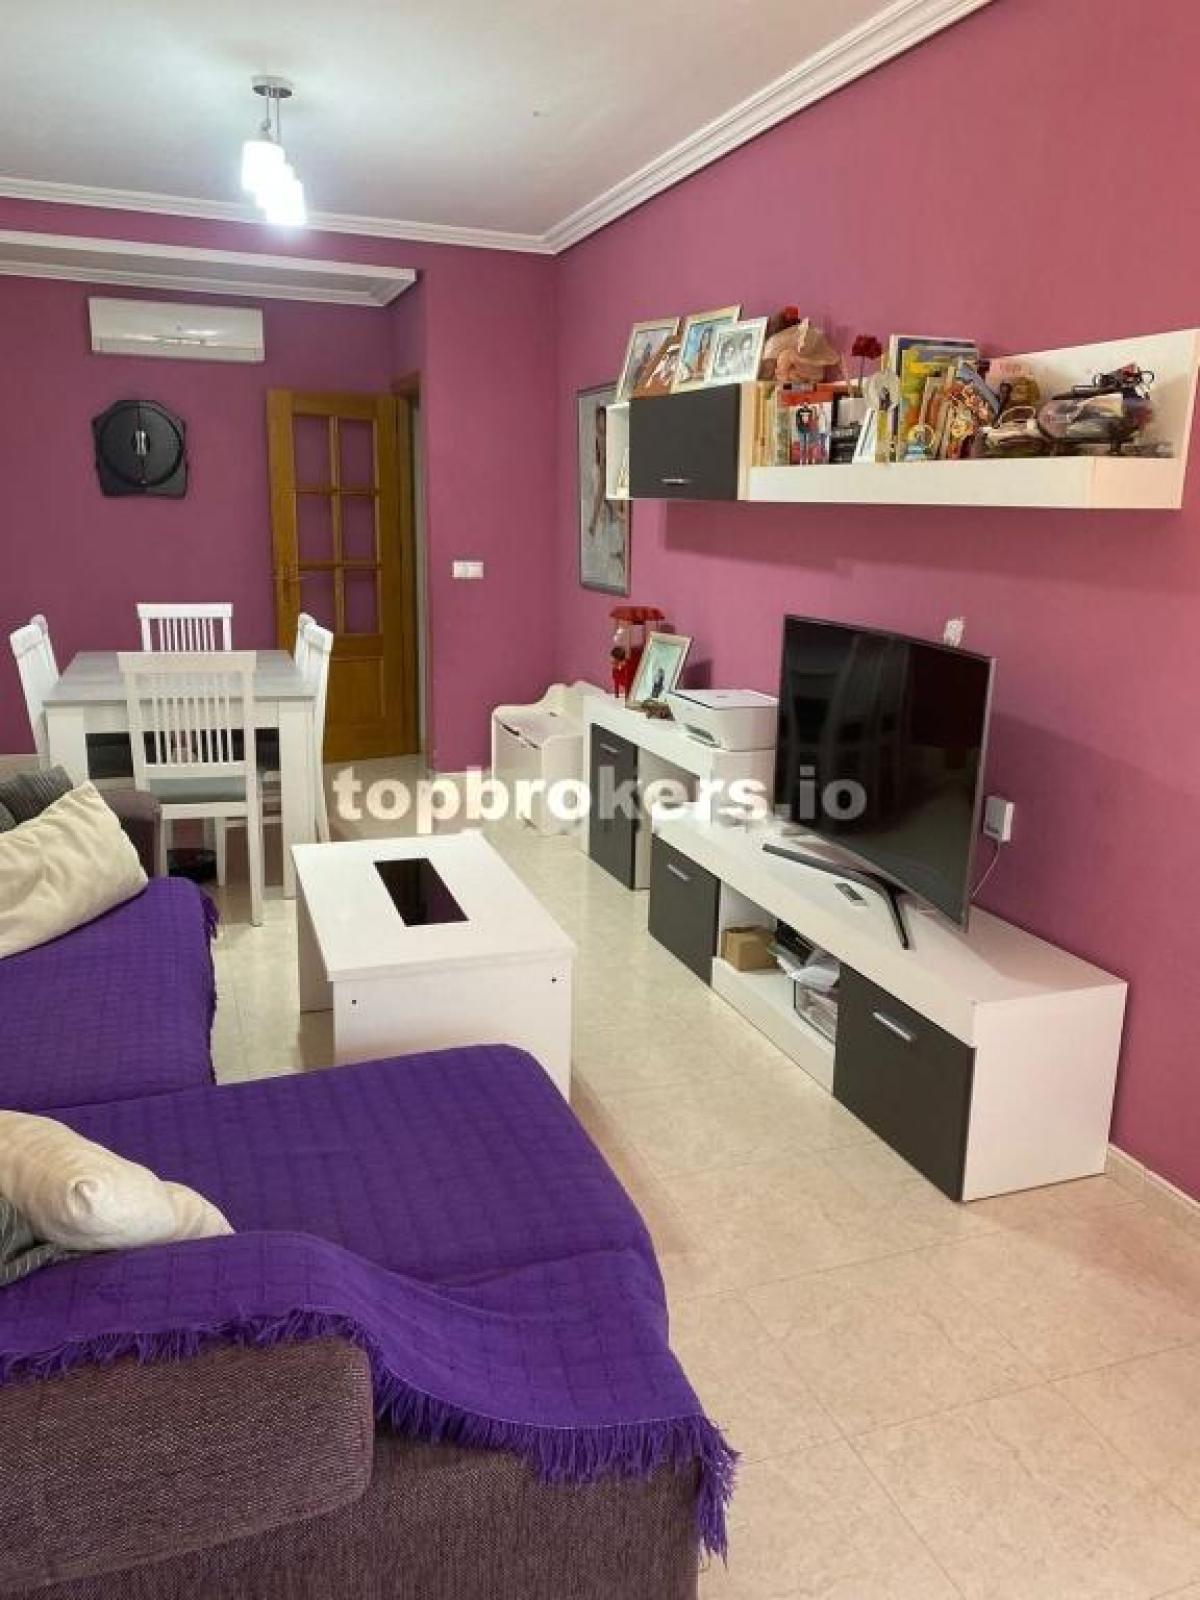 Picture of Apartment For Sale in Bigastro, Alicante, Spain